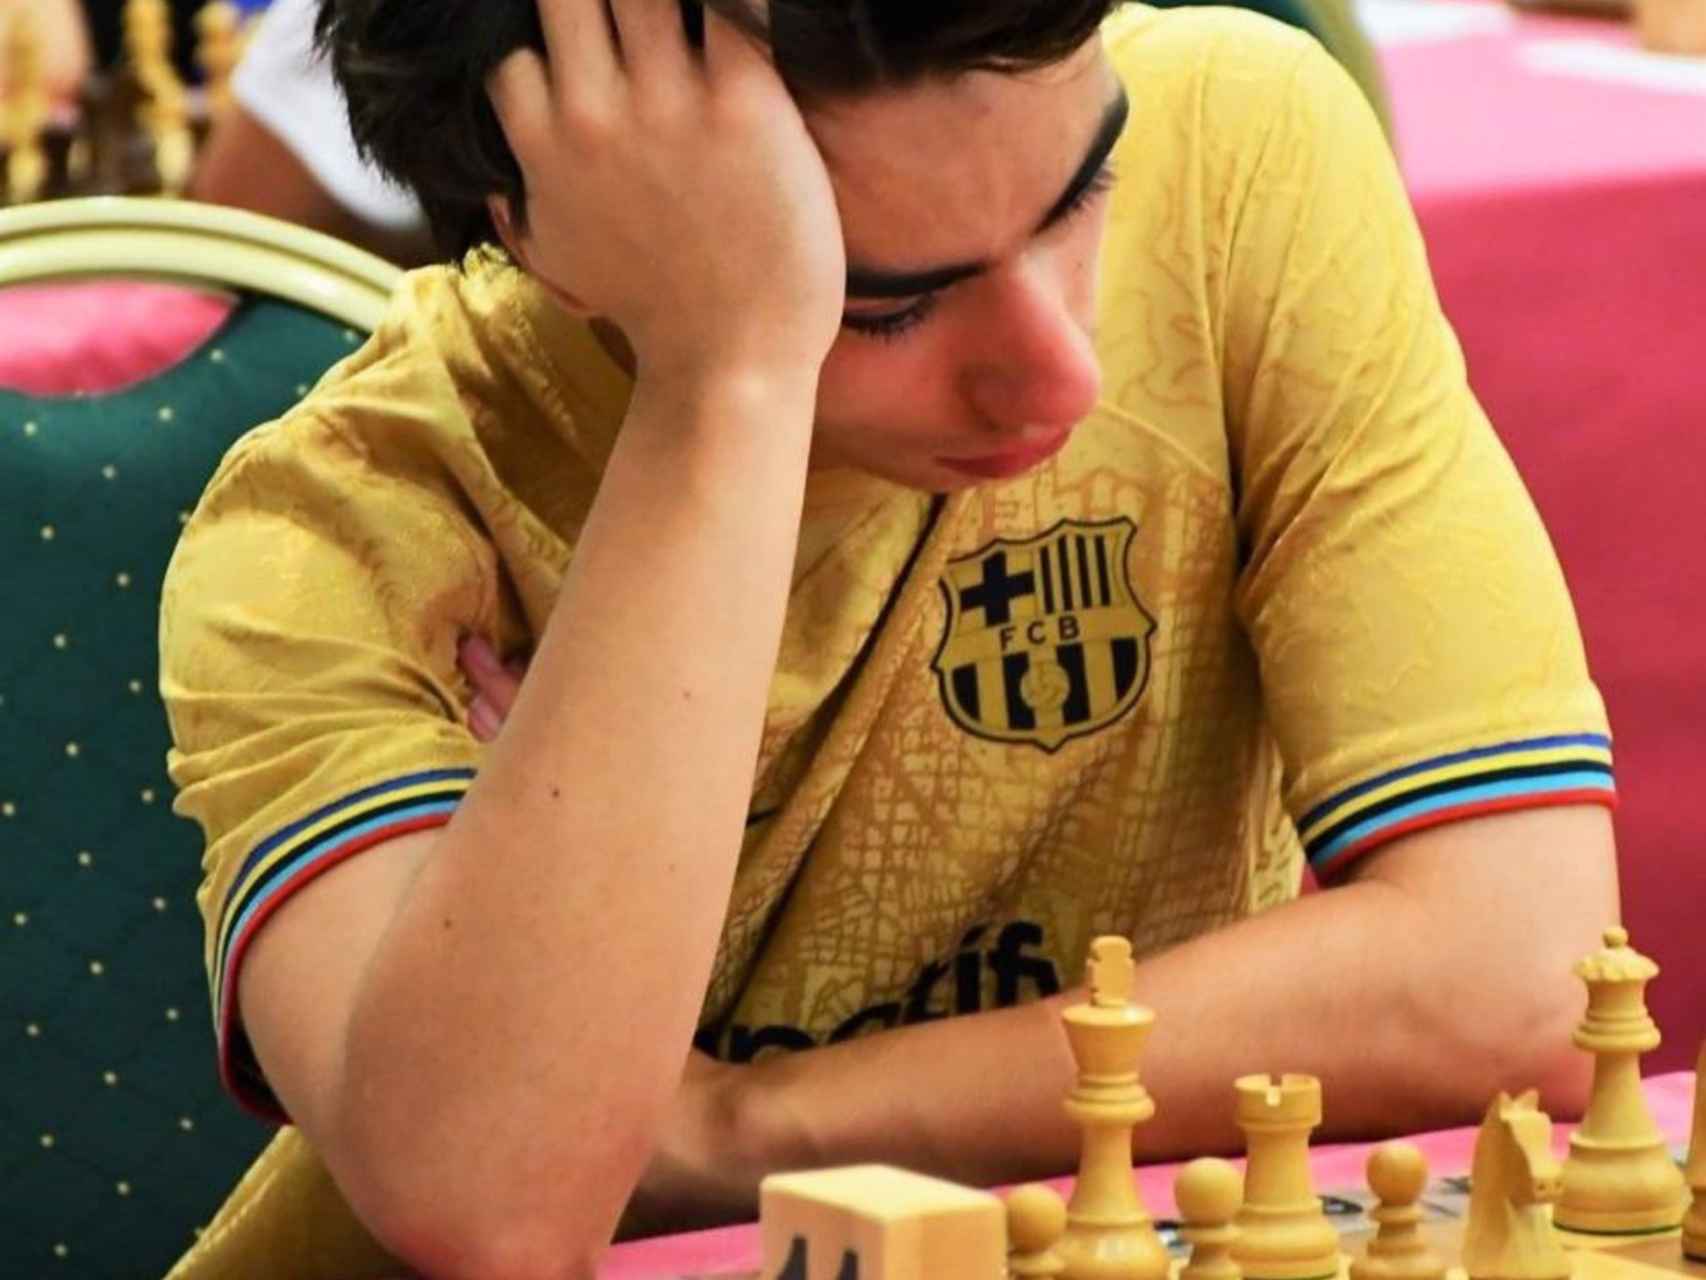 Miguel Ruiz concentrado jugando una partida de ajedrez.